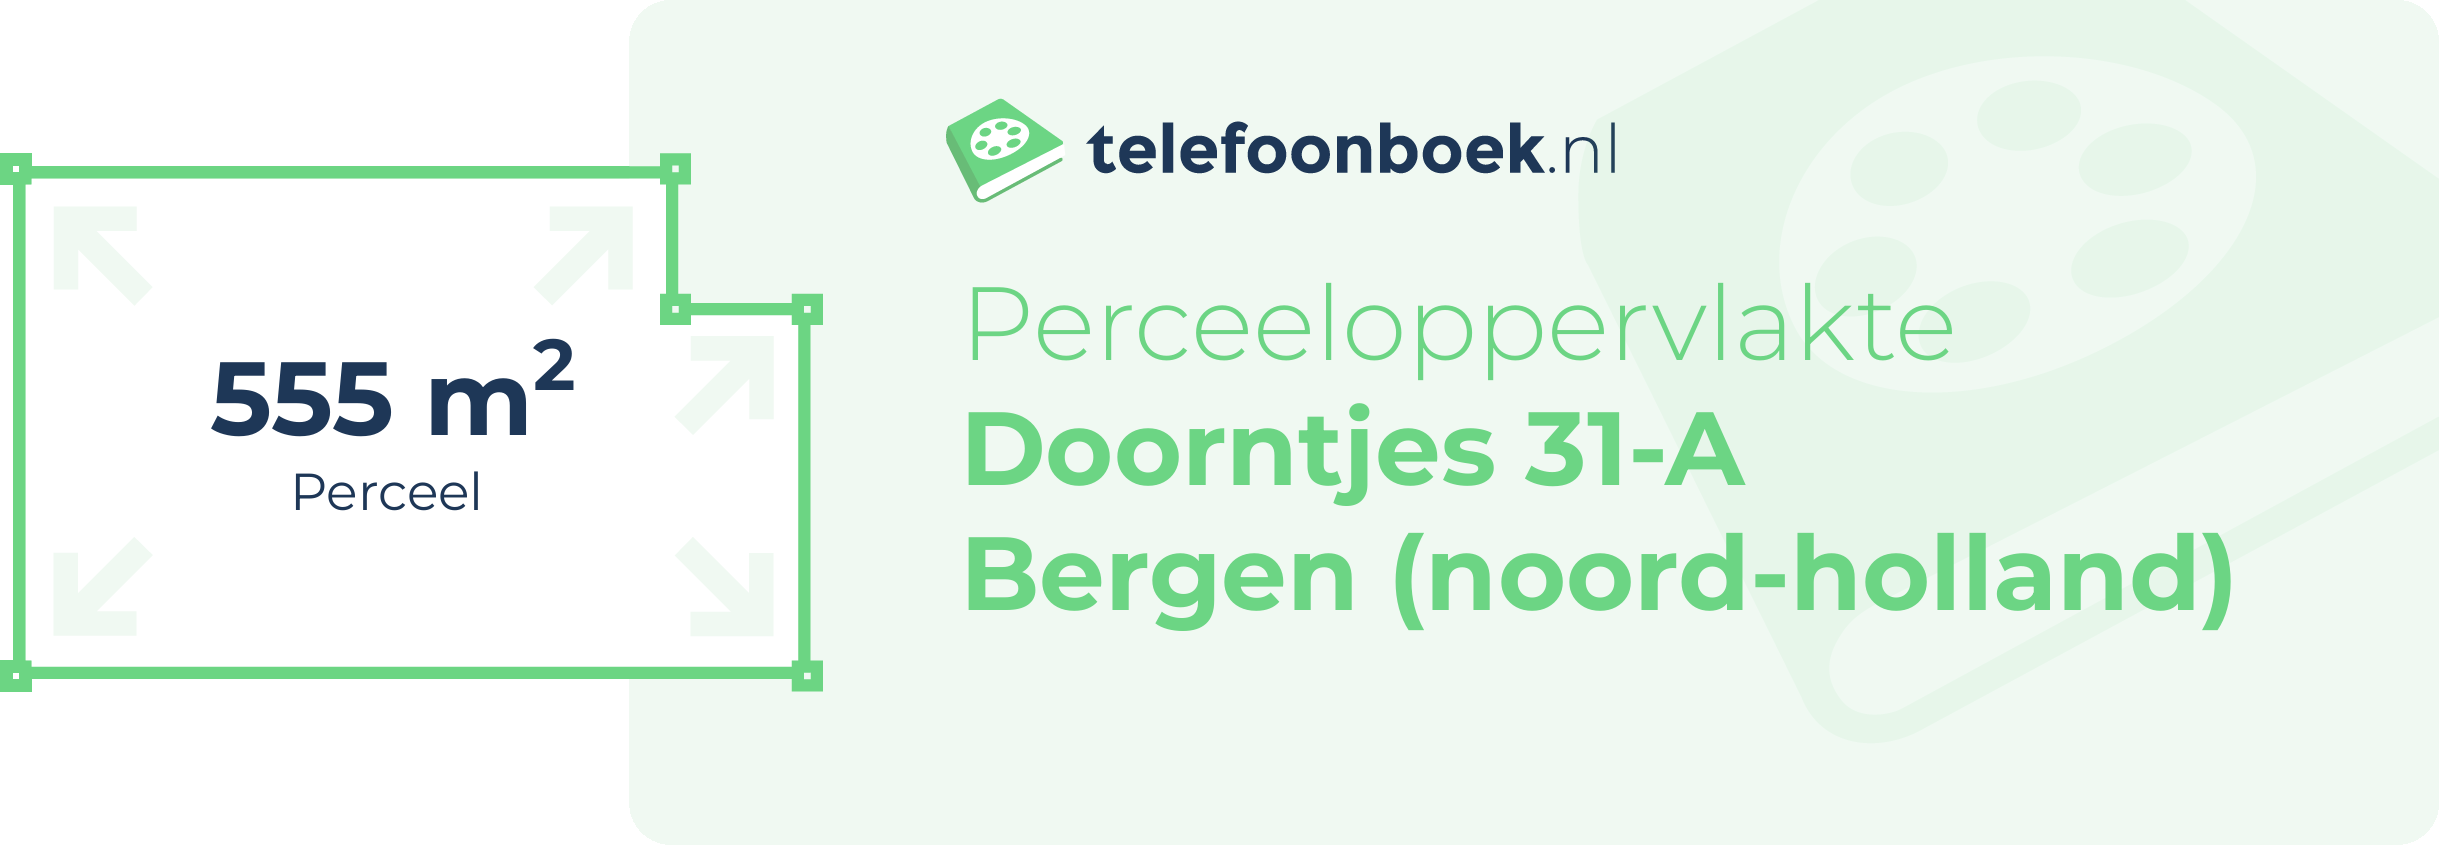 Perceeloppervlakte Doorntjes 31-A Bergen (Noord-Holland)